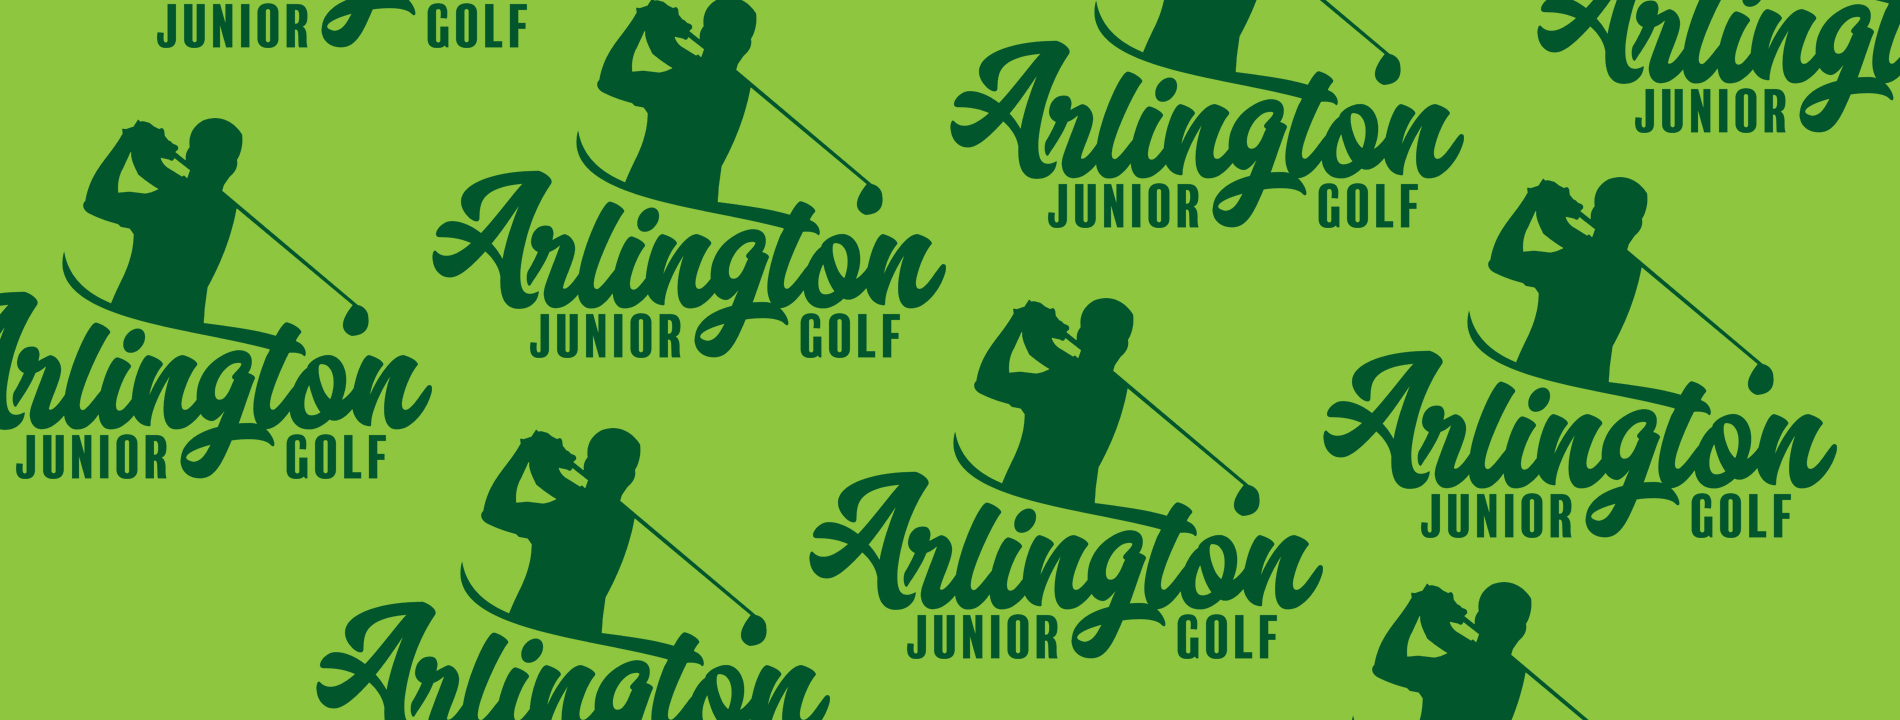 Junior Golf web slider